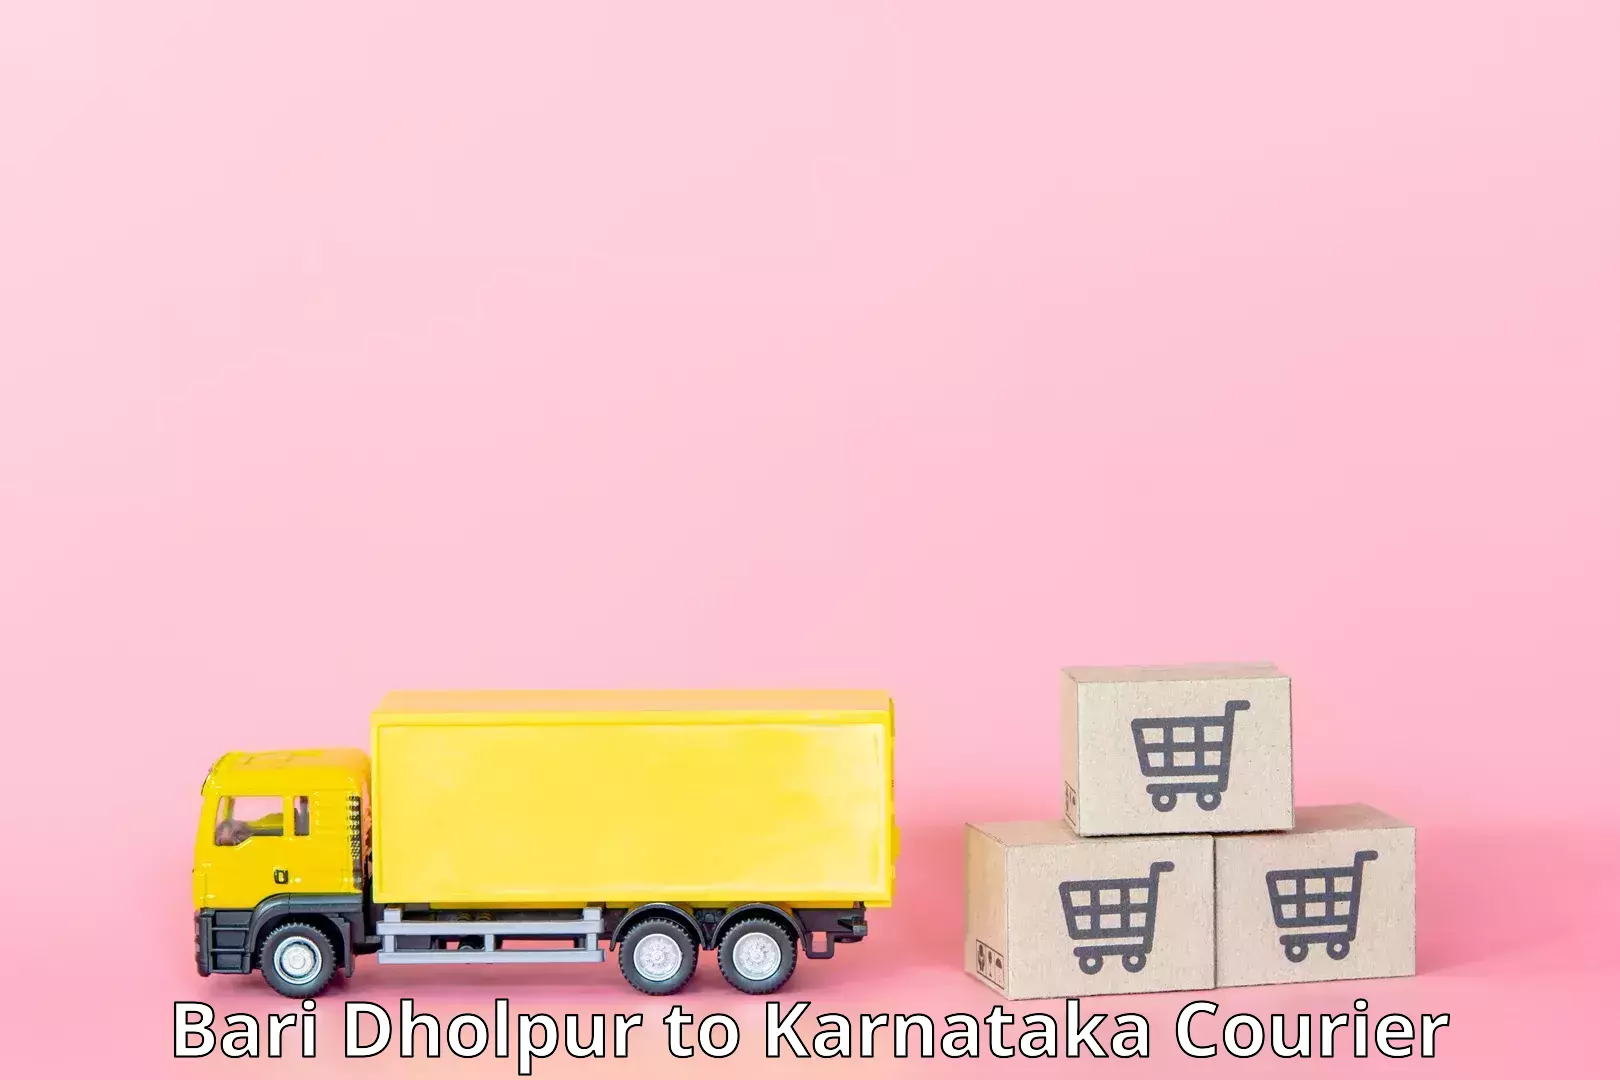 Nationwide shipping services Bari Dholpur to Karnataka